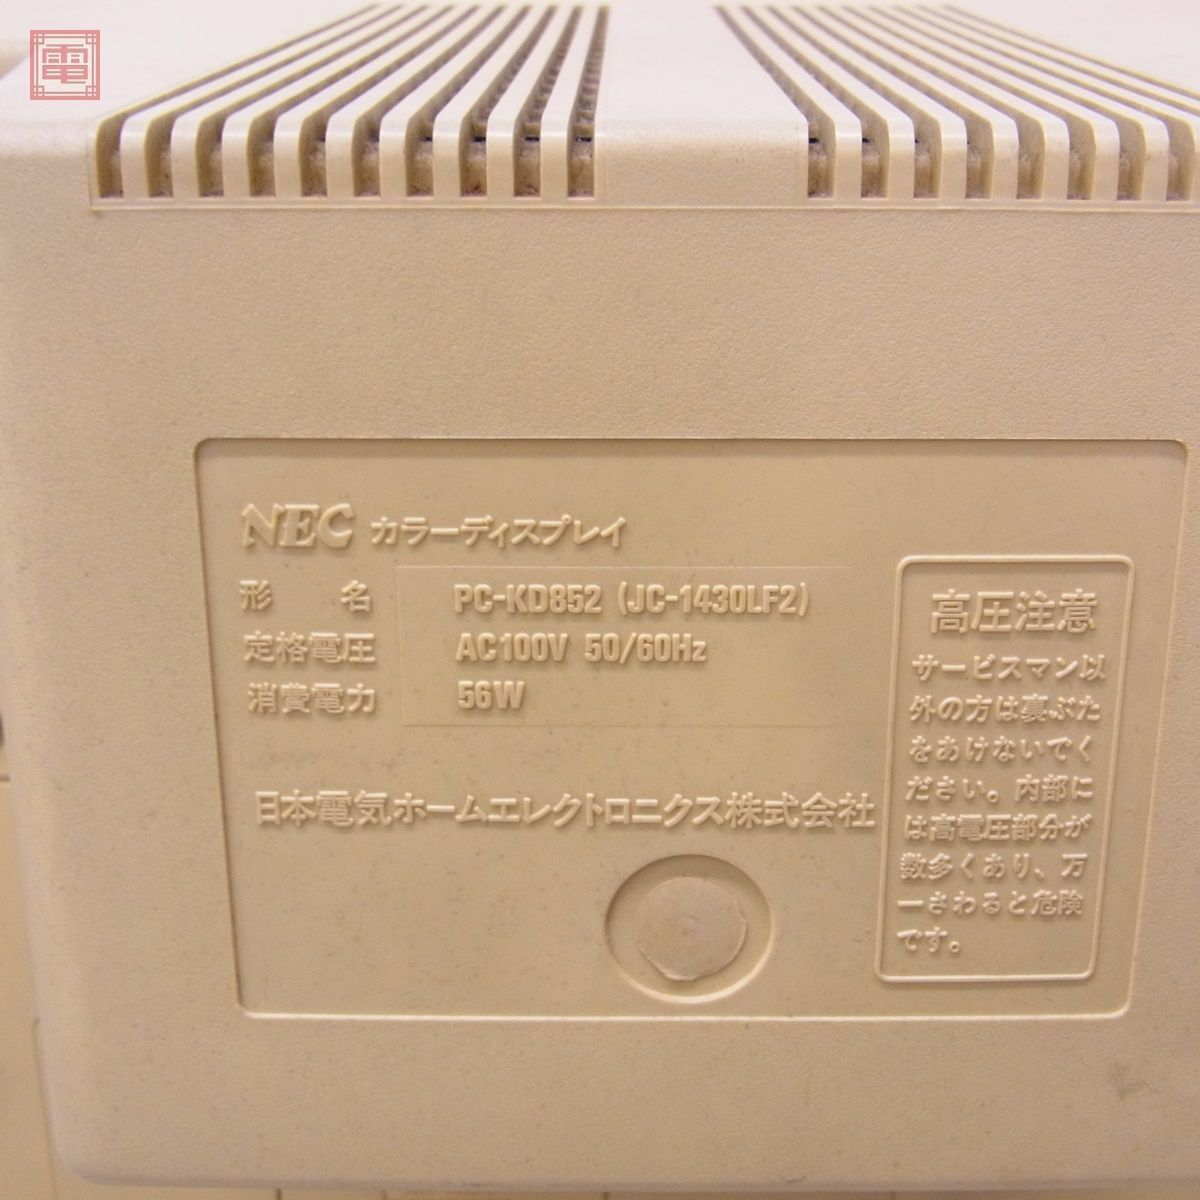 NEC PC-9801RX2 本体 通電OK キーボード + モニター PC-KD852 まとめてセット ジャンク パーツ取りにどうぞ【BA_画像4